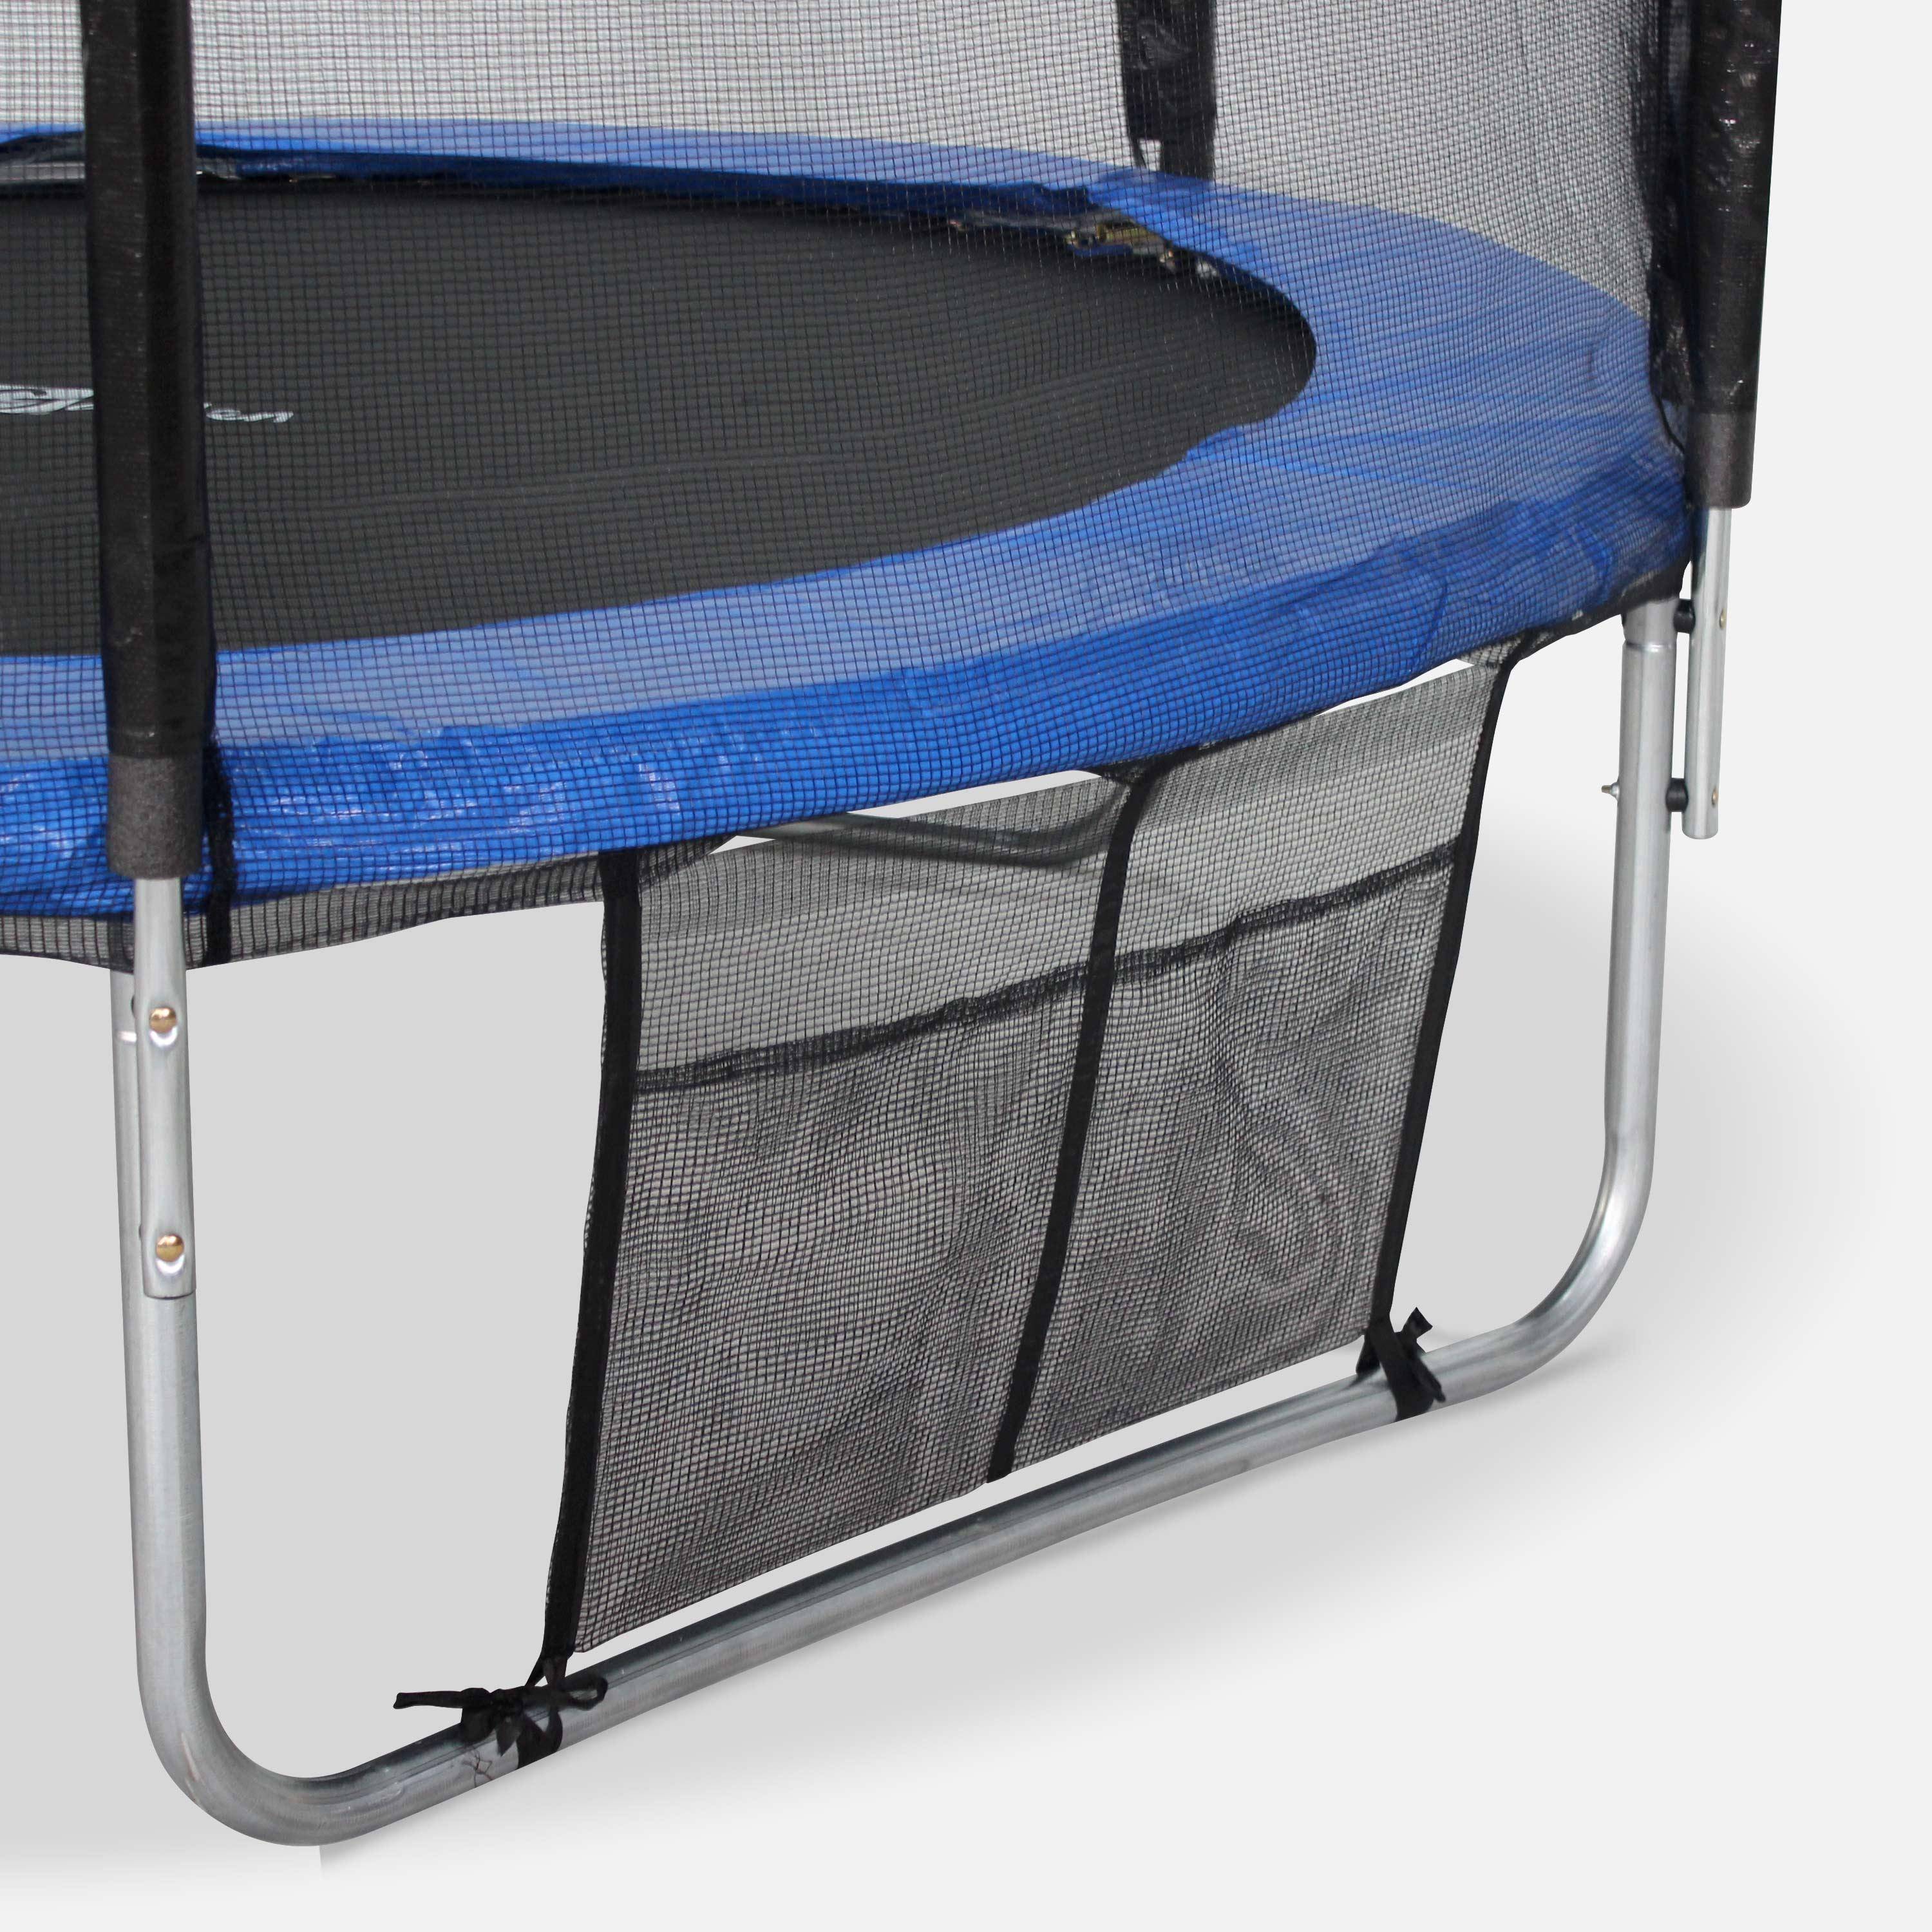 Trampolim de 305 cm,cama elastica suporta até 100 kg. Inclui: escada + cobertura de proteção + bolsa para sapatos + kit de fixação  - Mars XXL Photo4